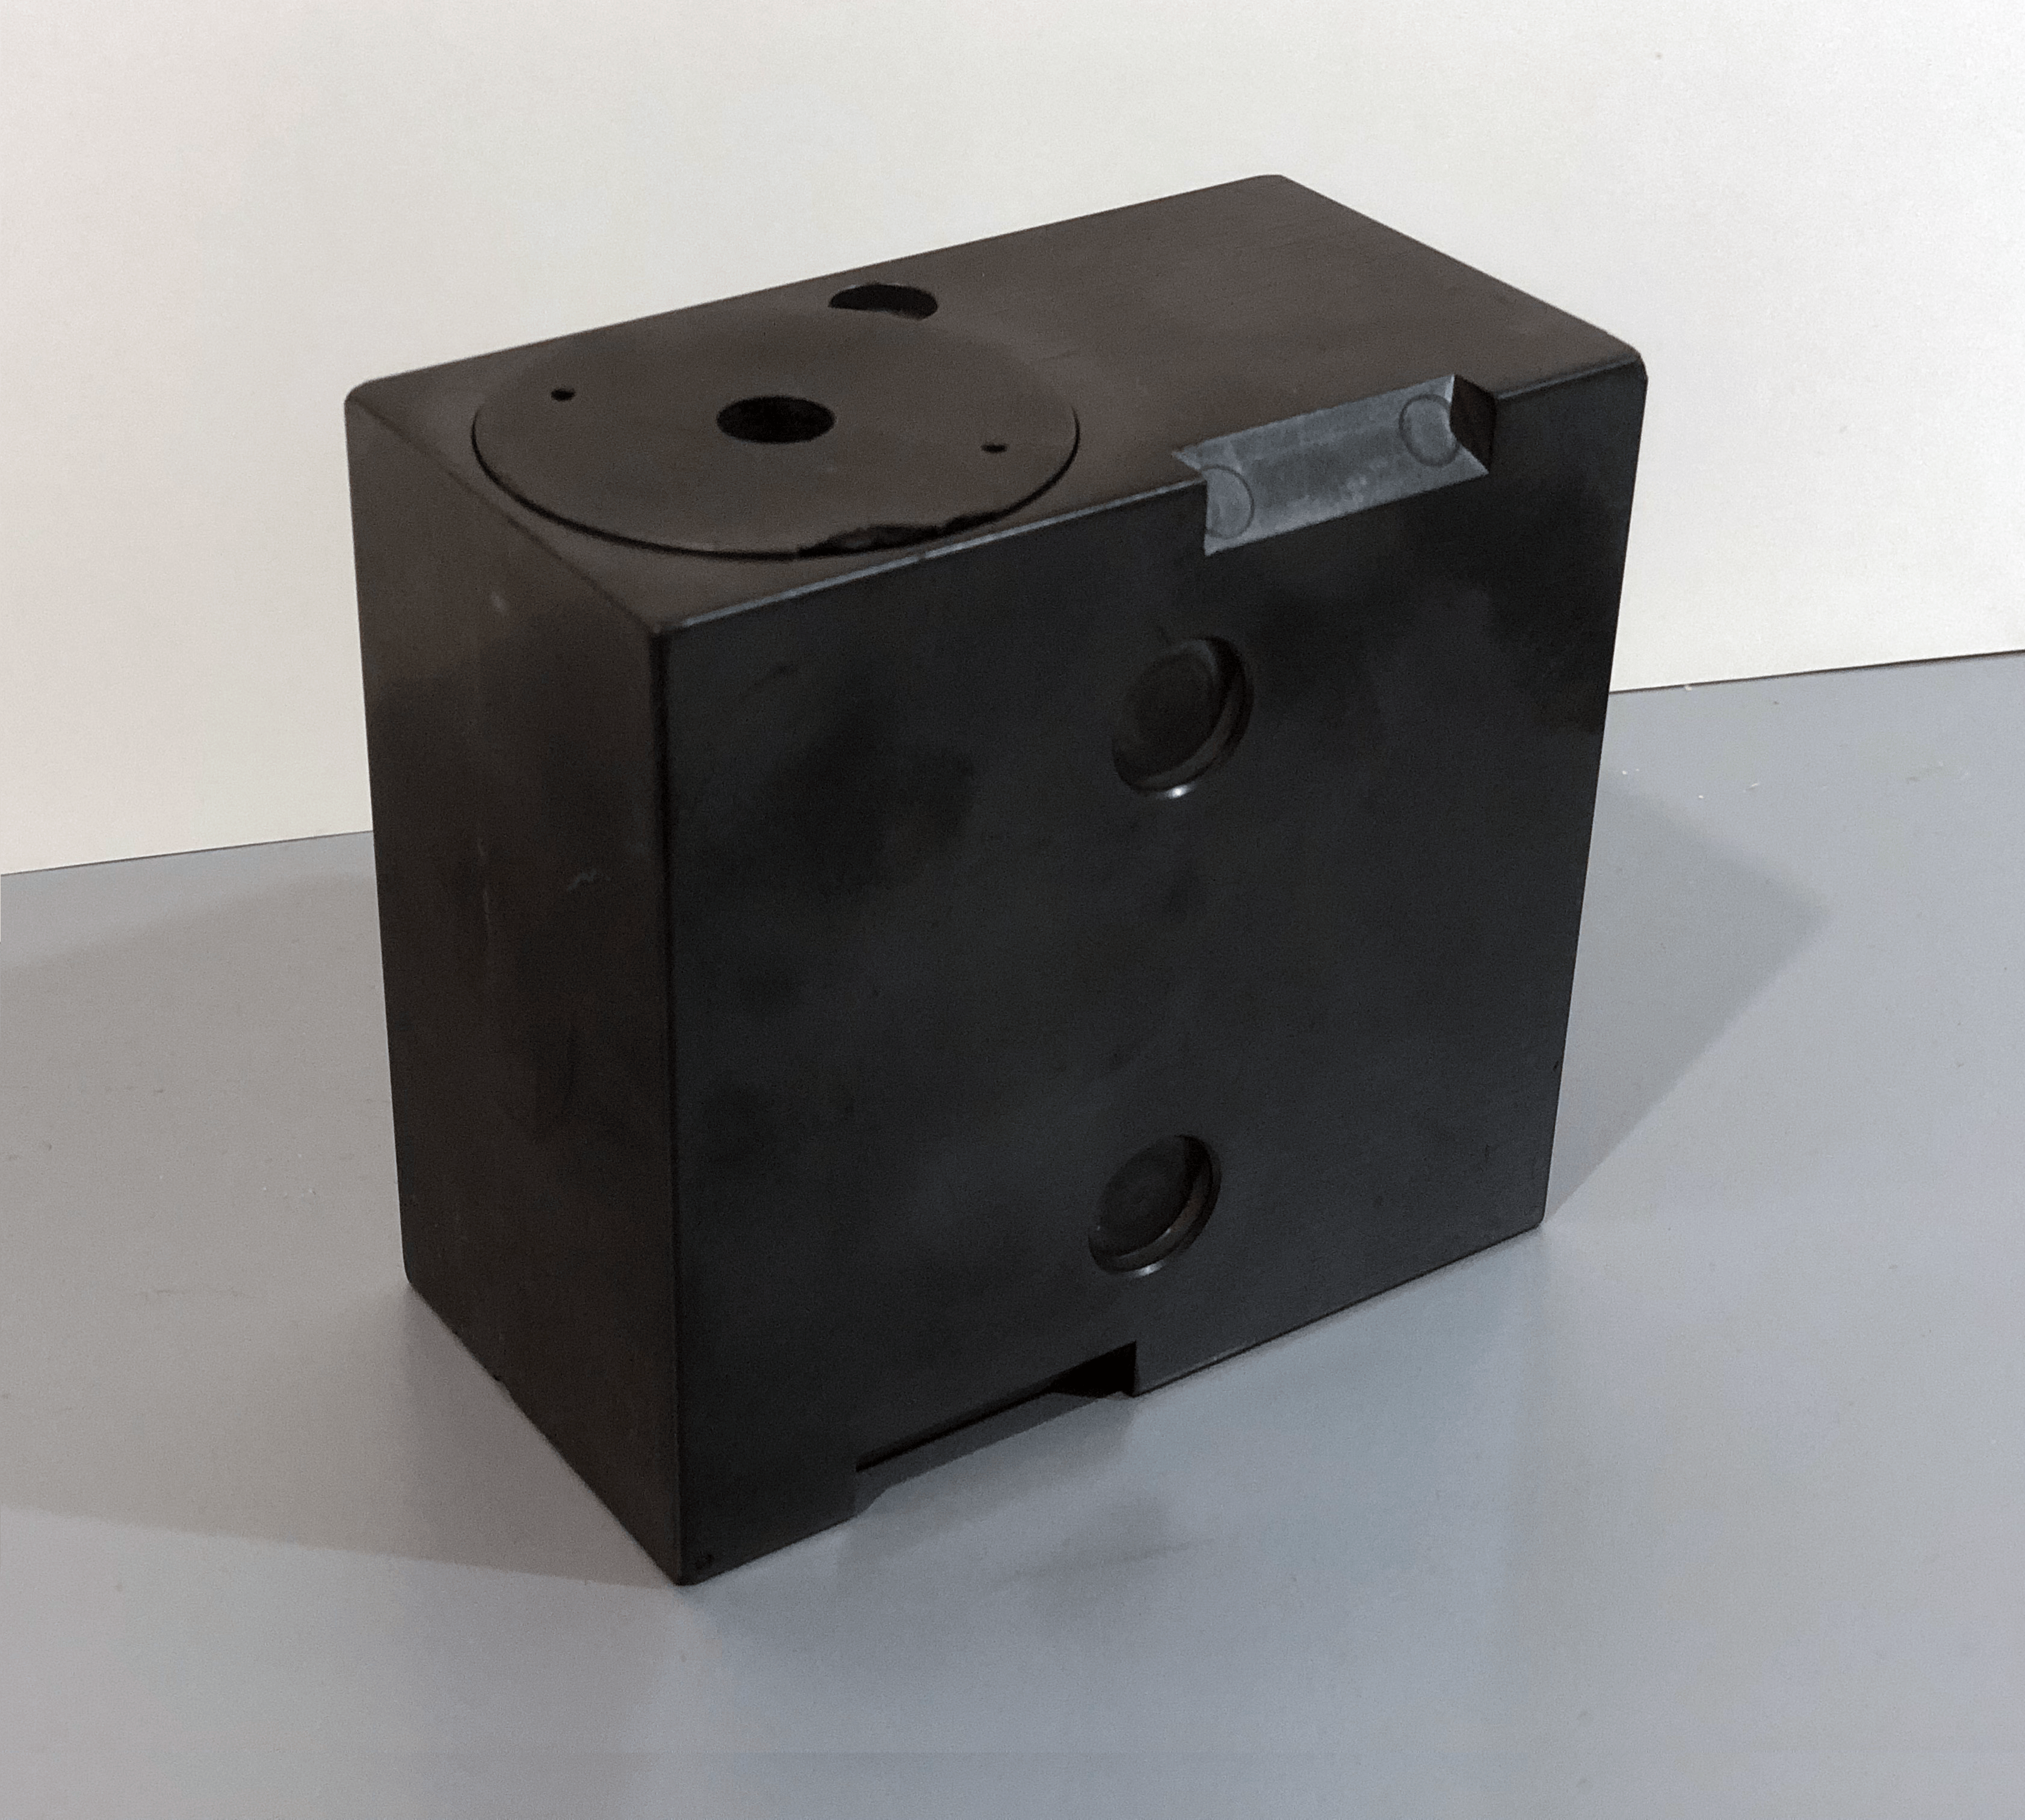 A small, square black box.